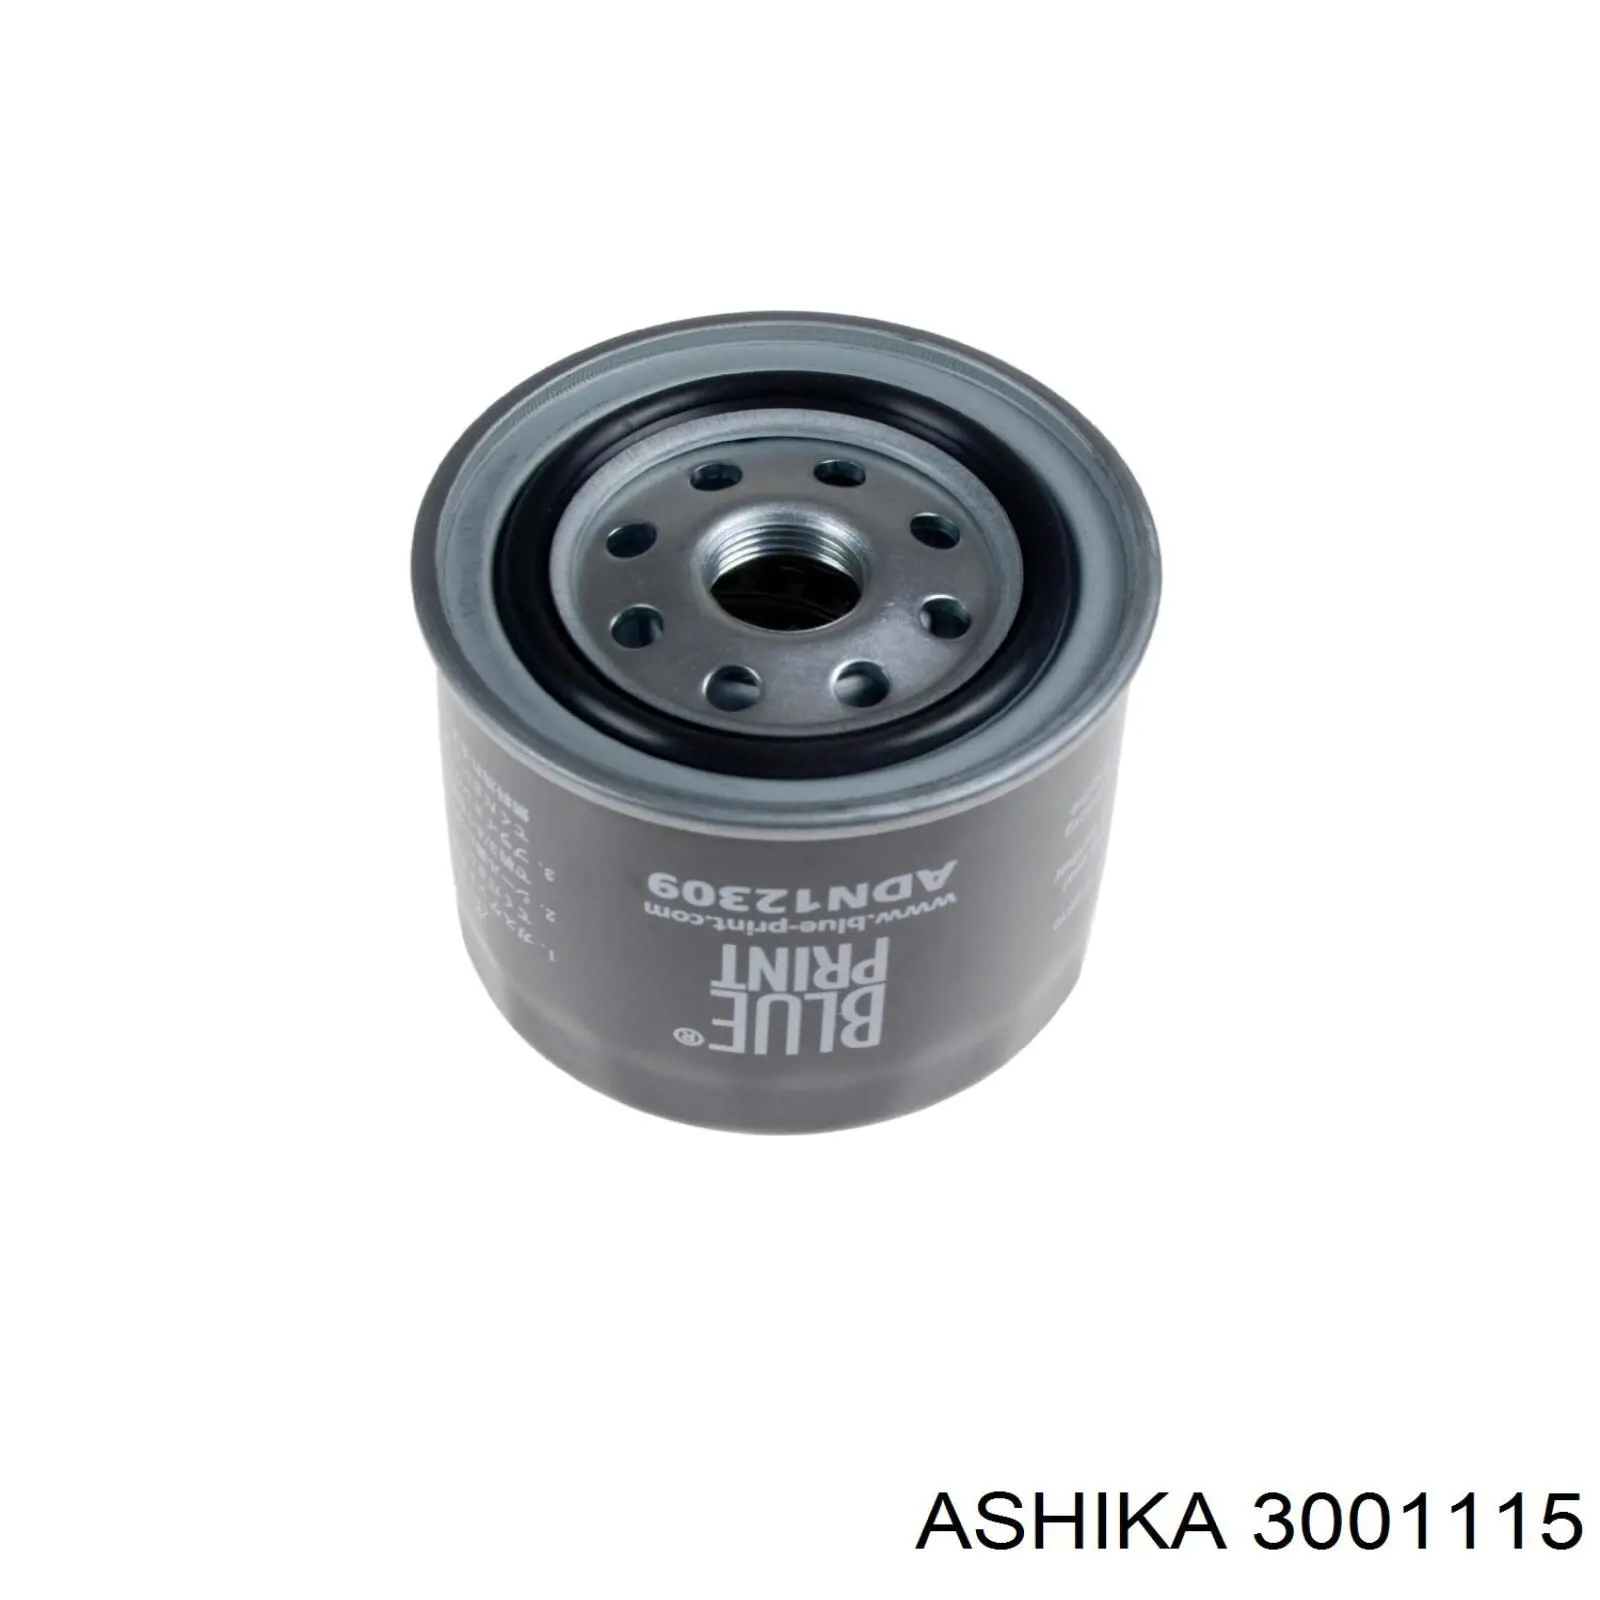 3001115 Ashika filtro combustible